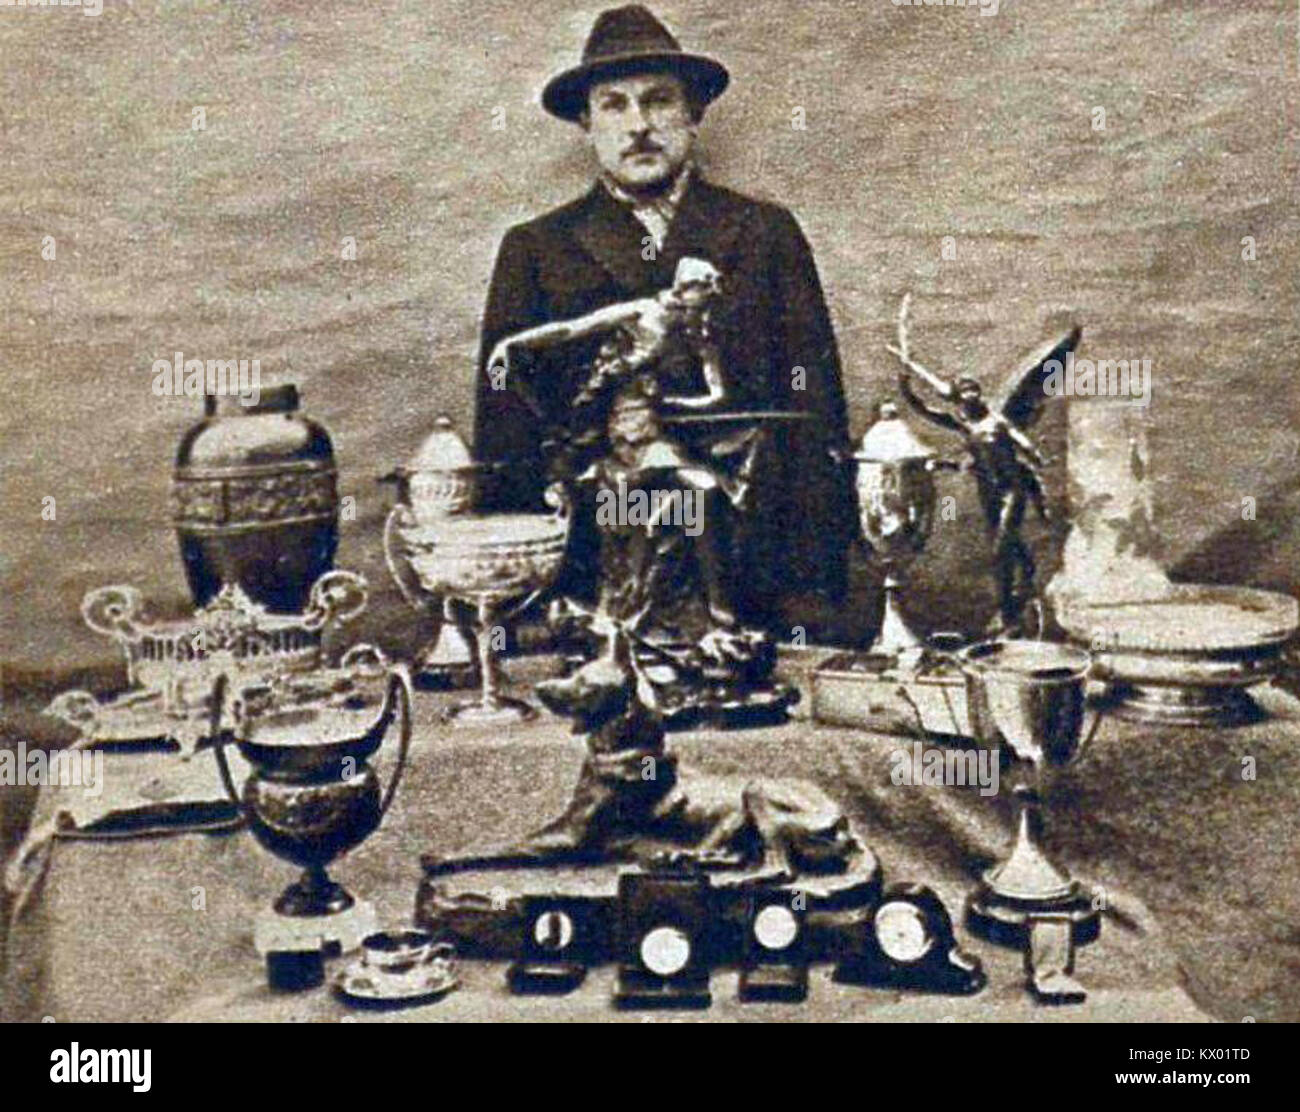 Michel Doré et ses trophées en mars 1926 Foto Stock